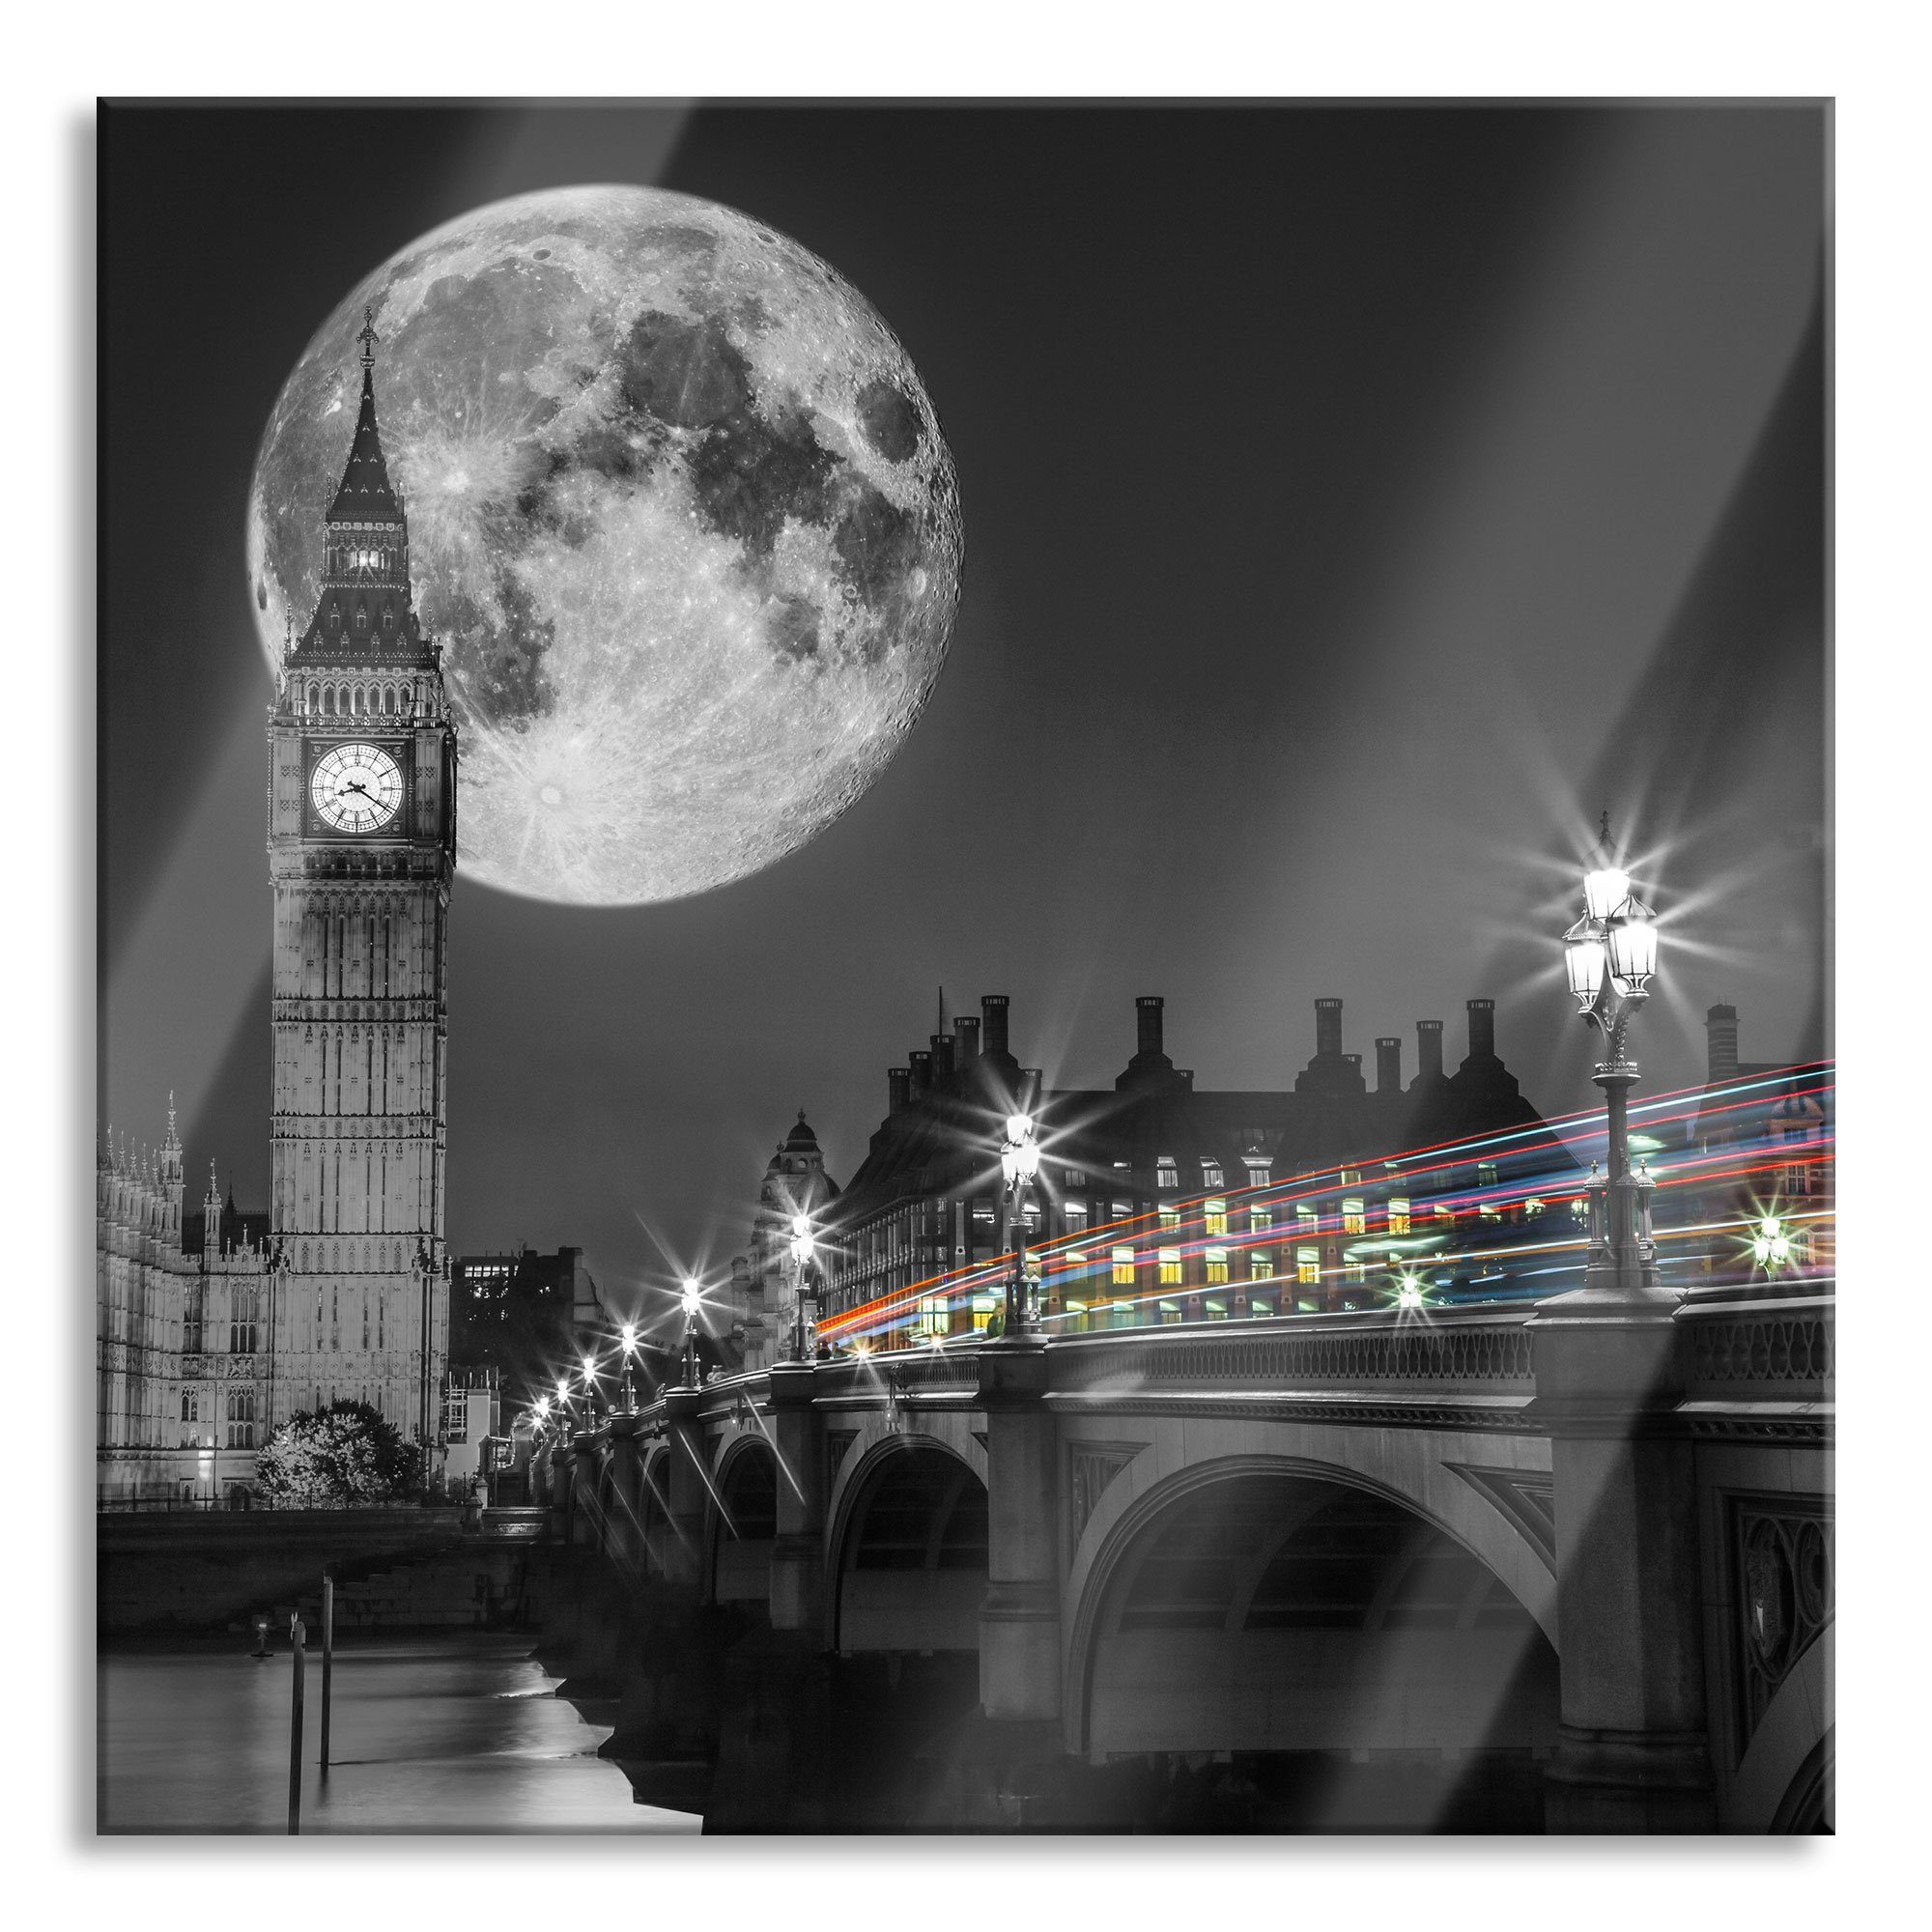 Pixxprint Glasbild Big Ben mit Mond London, Big Ben mit Mond London (1 St), Glasbild aus Echtglas, inkl. Aufhängungen und Abstandshalter